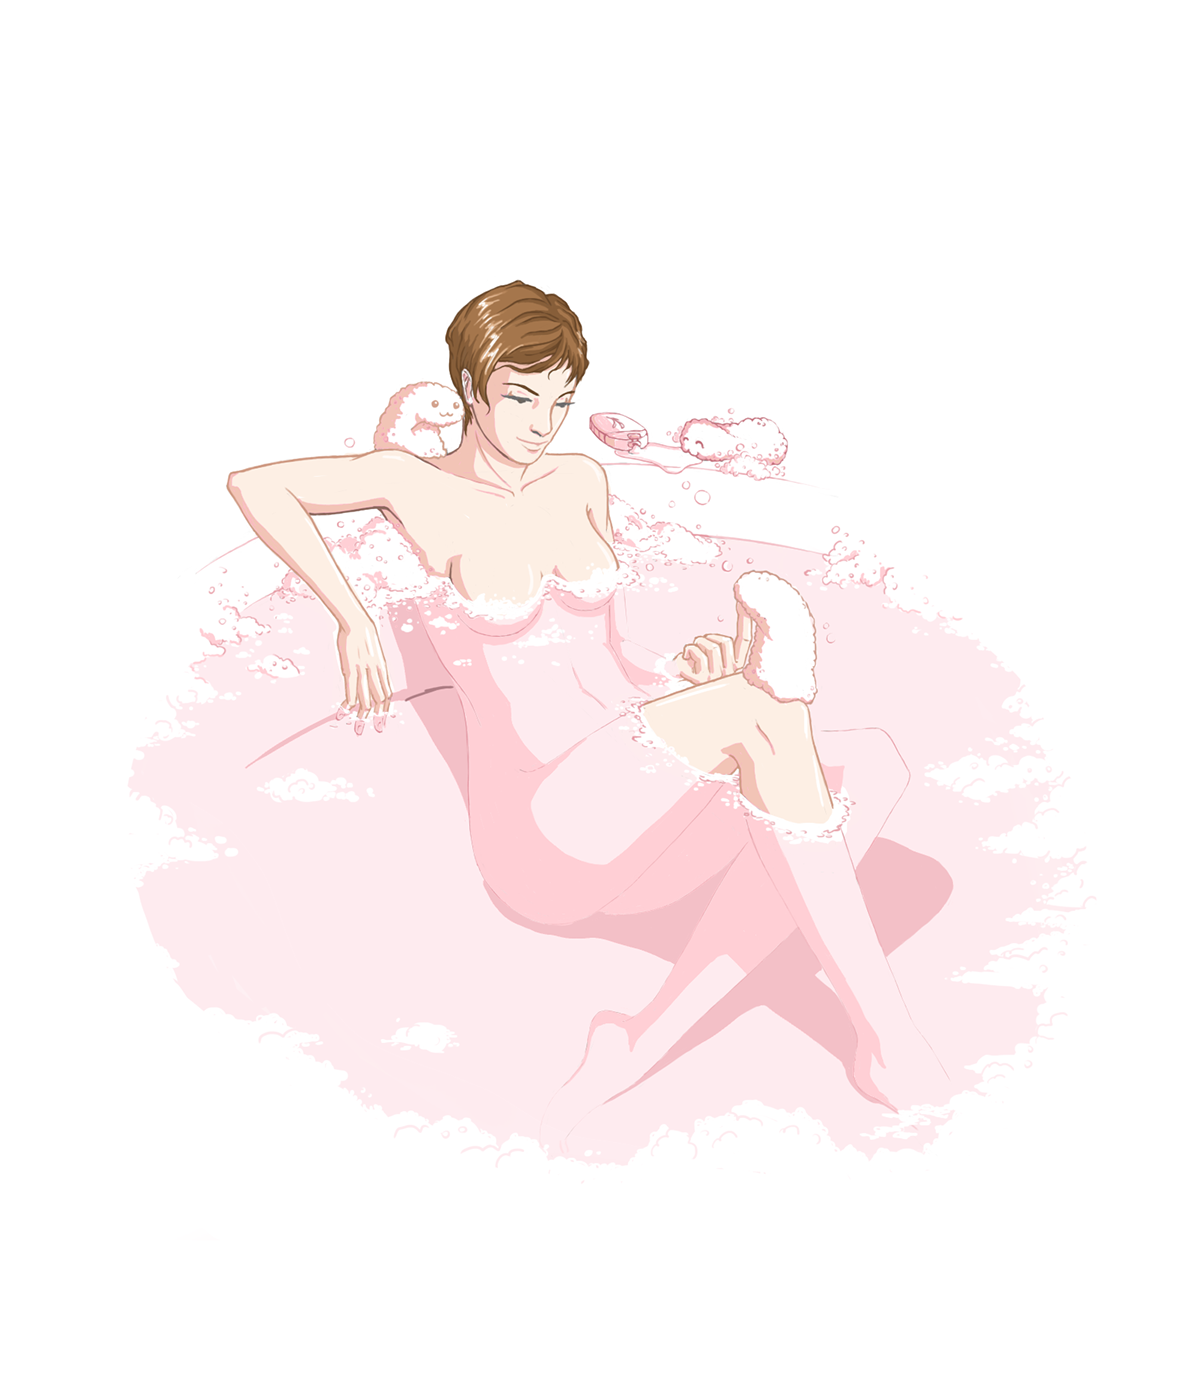 Sponge bath girl naked pink cute Foam